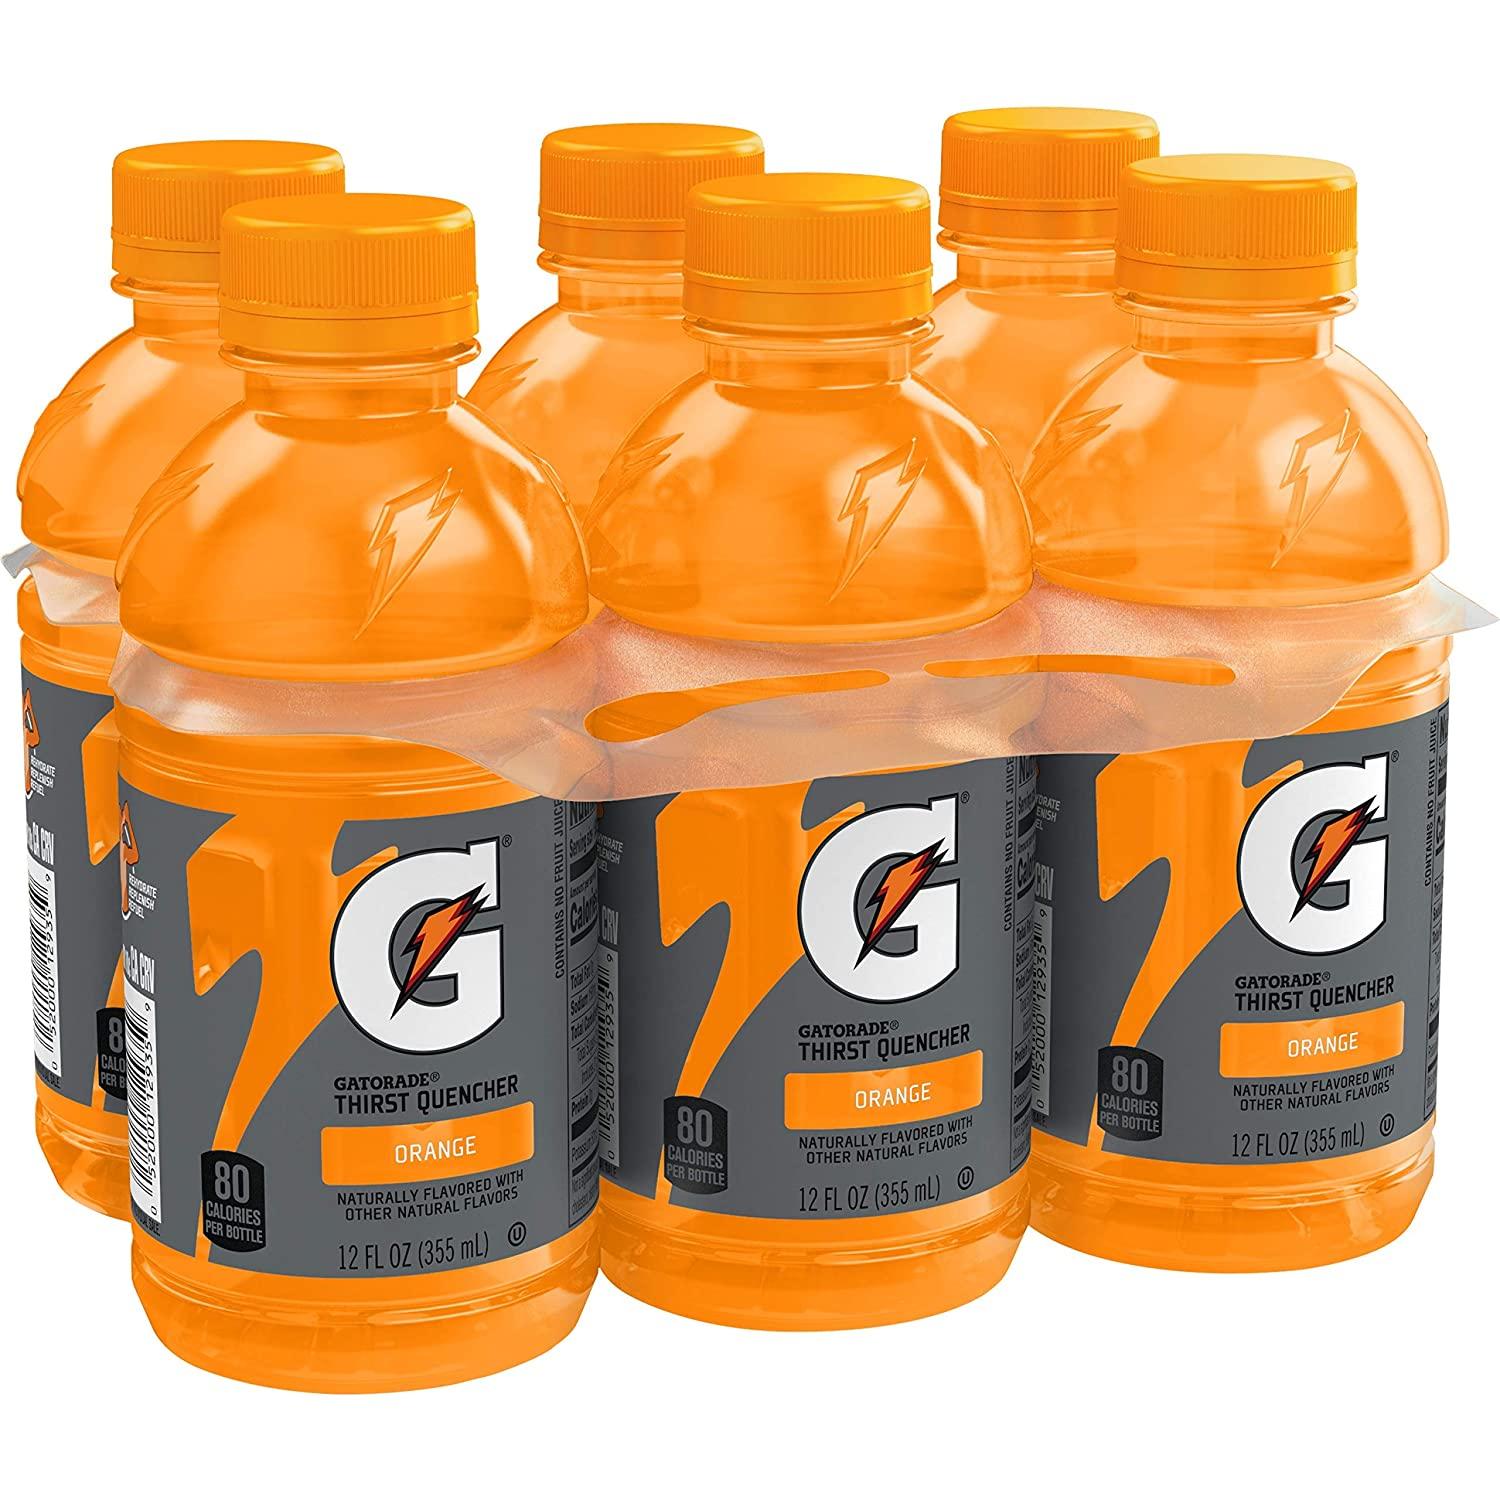 Gatorade Thirst Quencher, Orange, 12 Fl Oz, Pack of 6